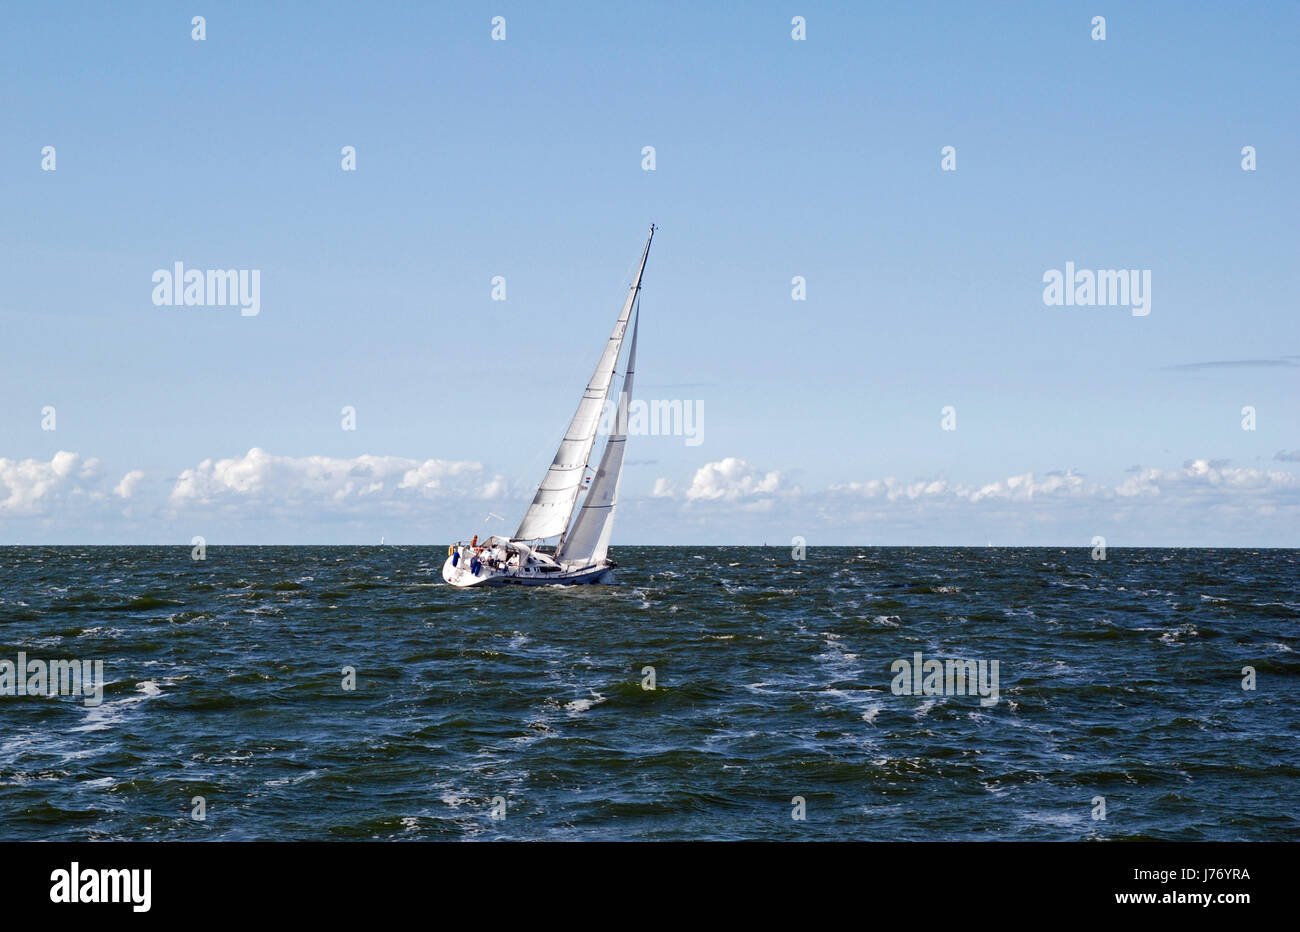 Yacht à voile hunter Holland Hollande Pays-Bas location de bateau bateau vent de pulvérisation Banque D'Images